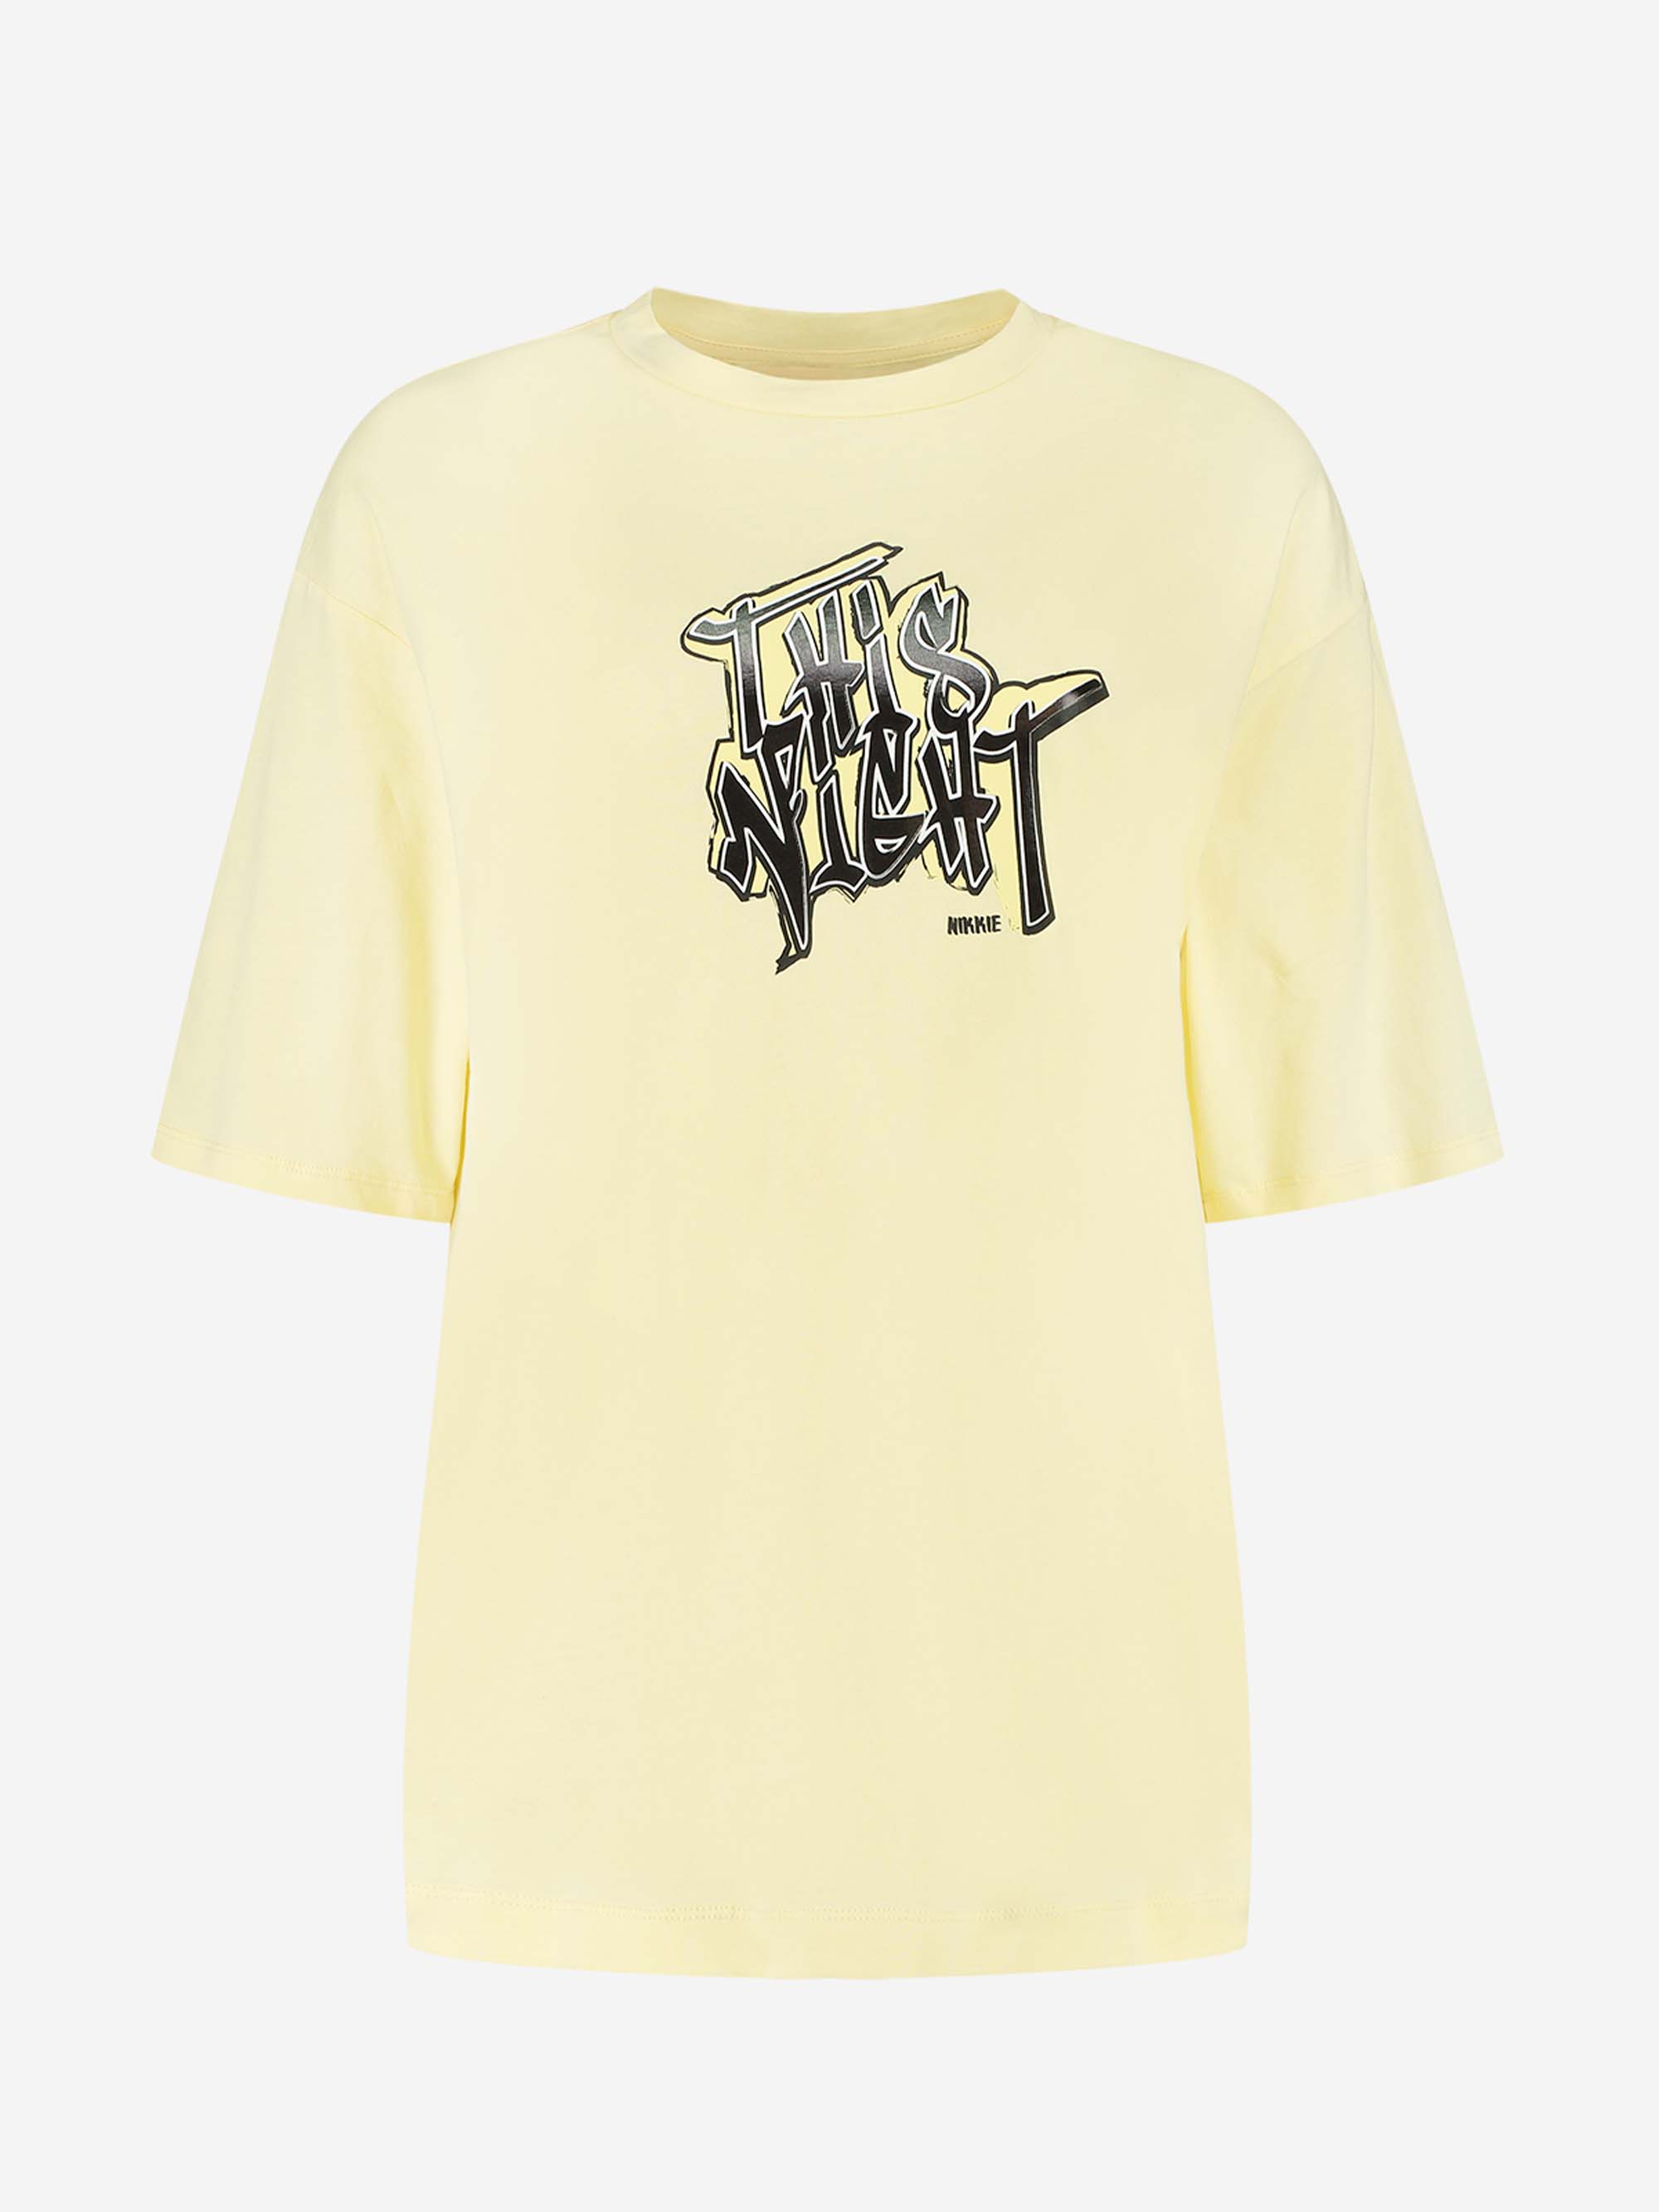 This Night T-Shirt